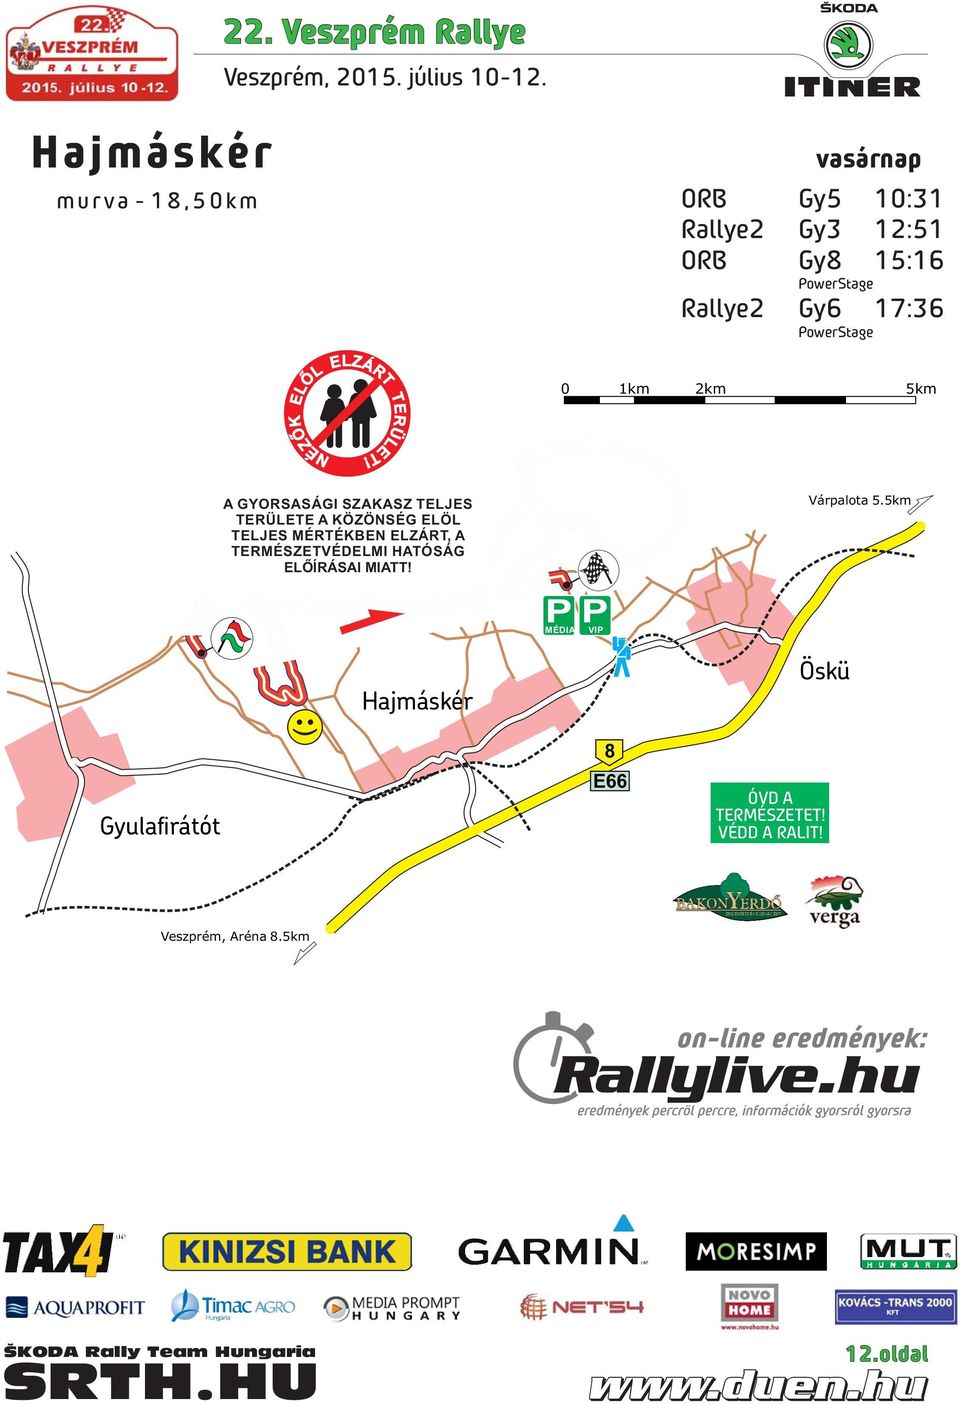 Rallye2 Gy6 17:36 PowerStage ELŐL ELZÁRT NÉZŐK TERÜLET!